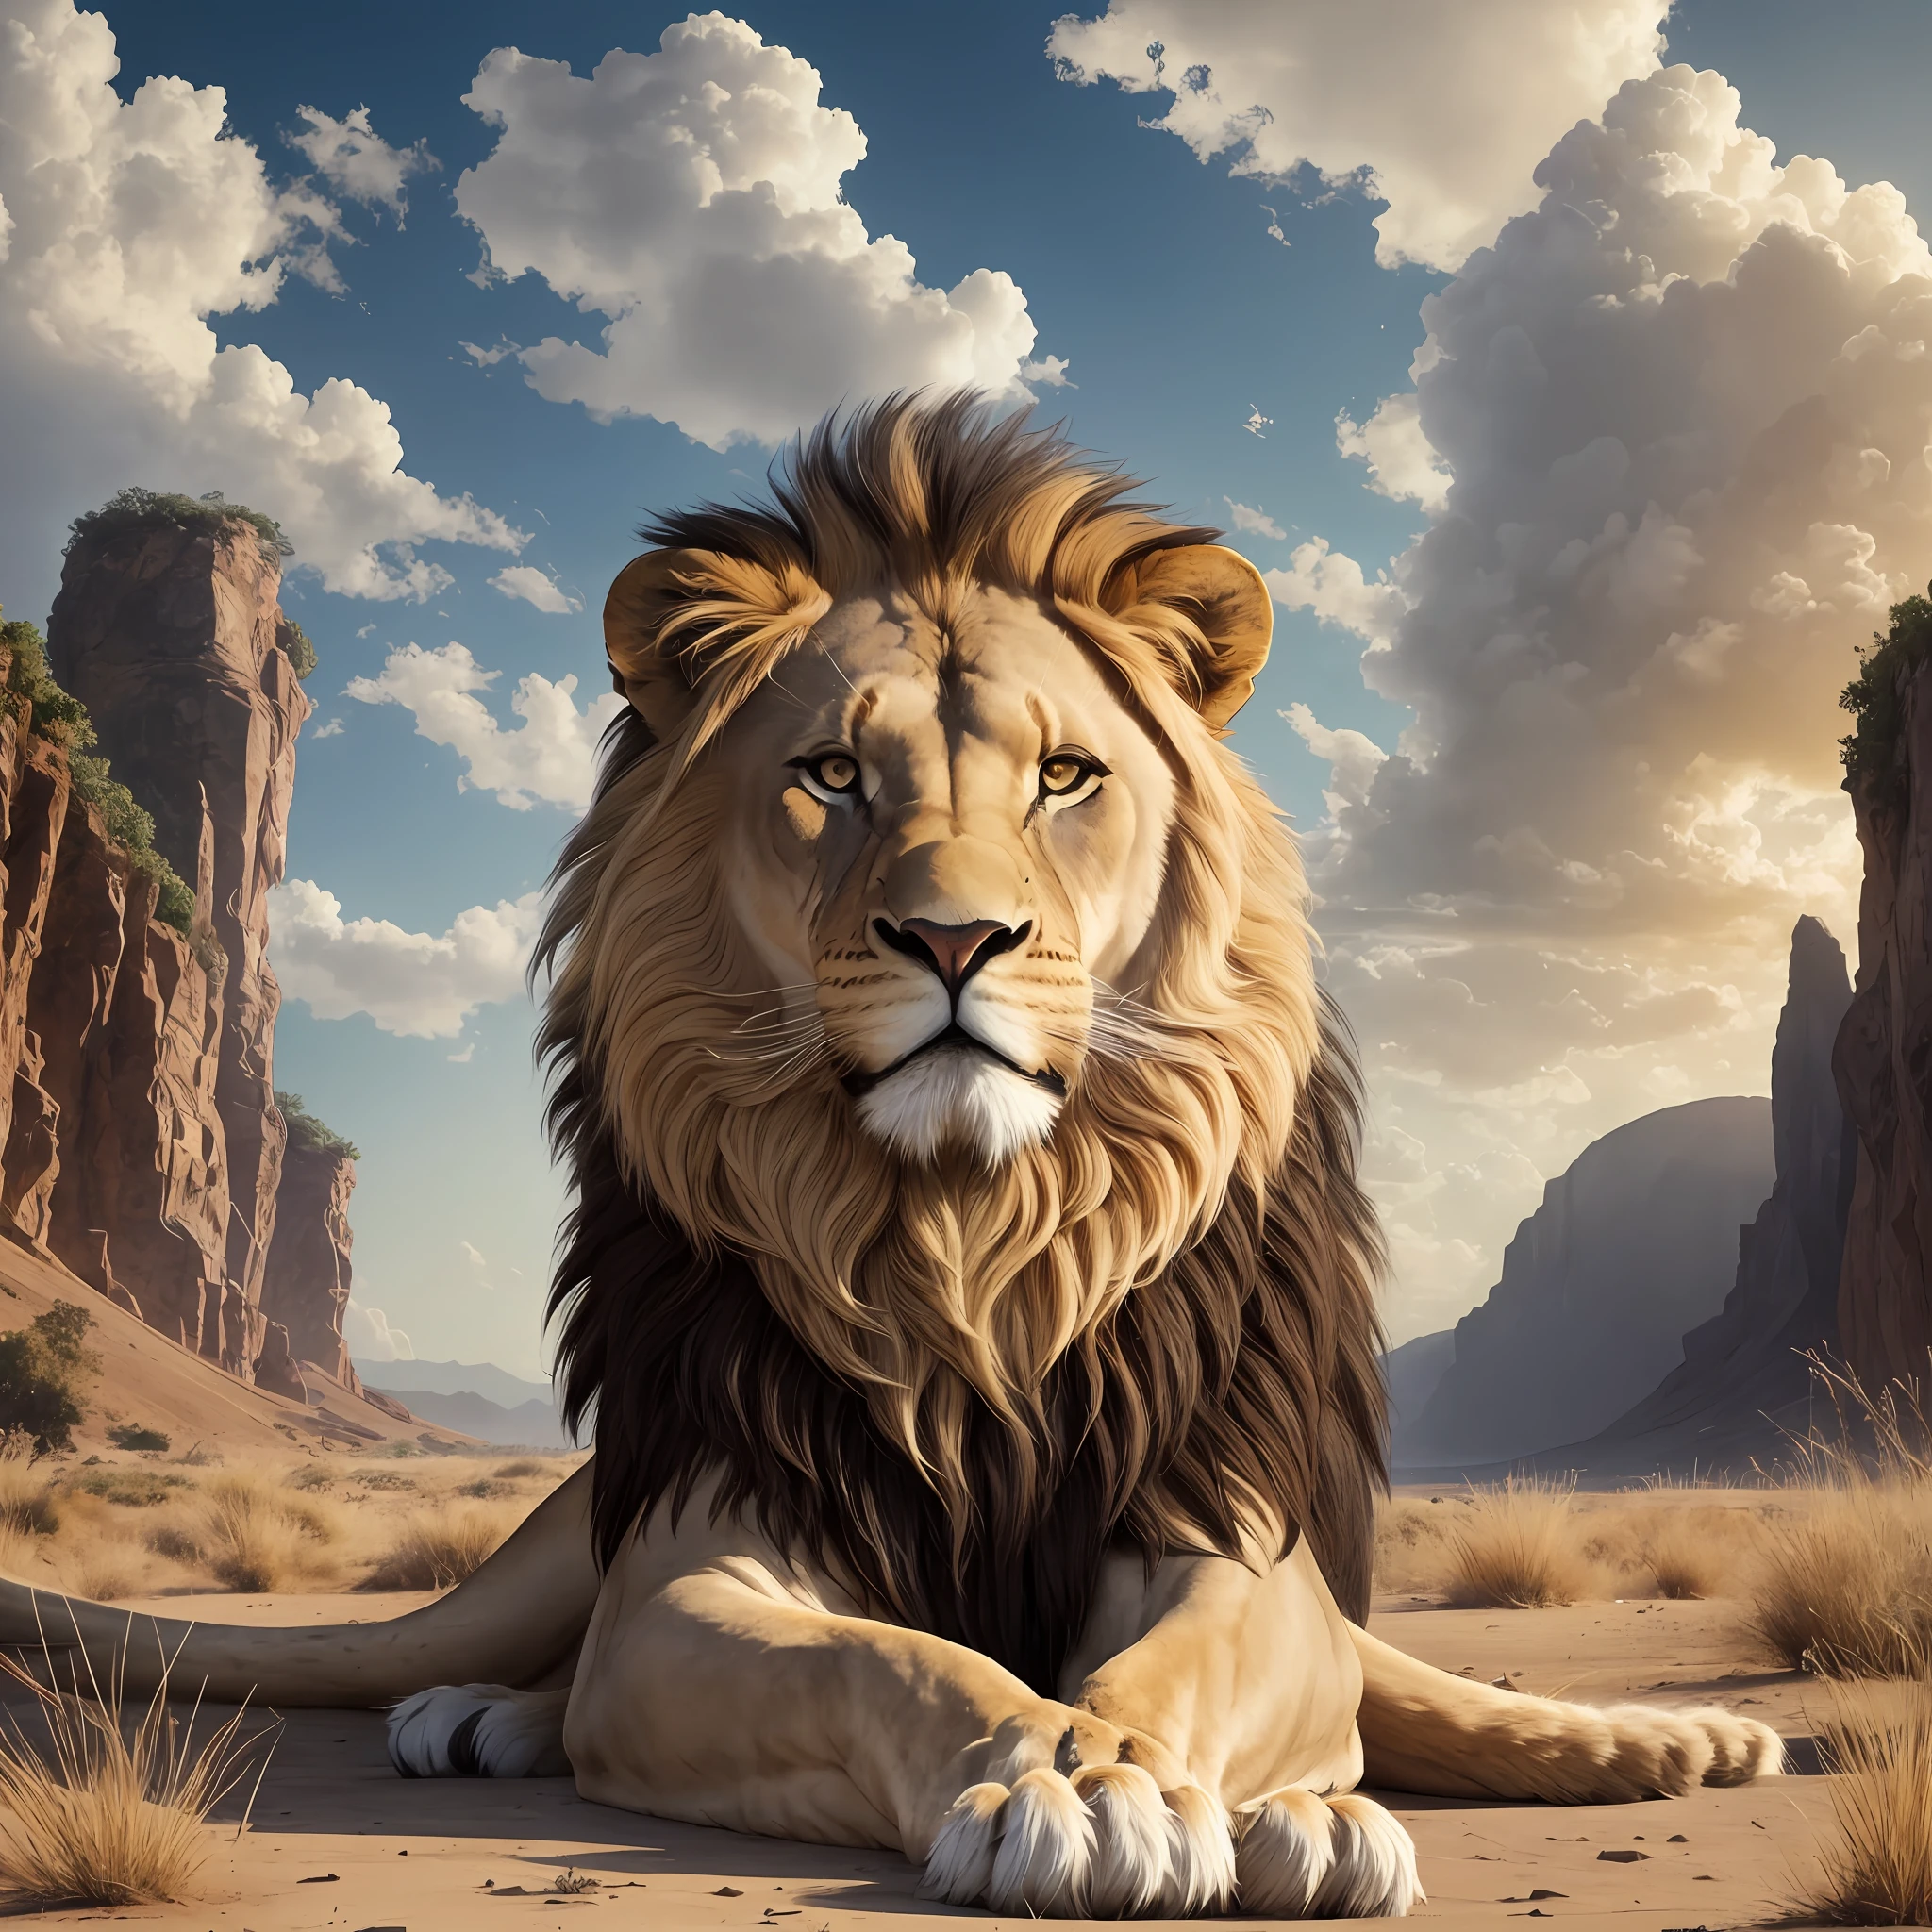 雄偉的, 氣勢, 美麗的獅子, 有著巨大的鬃毛, 在一個美麗的地方 --auto --s2